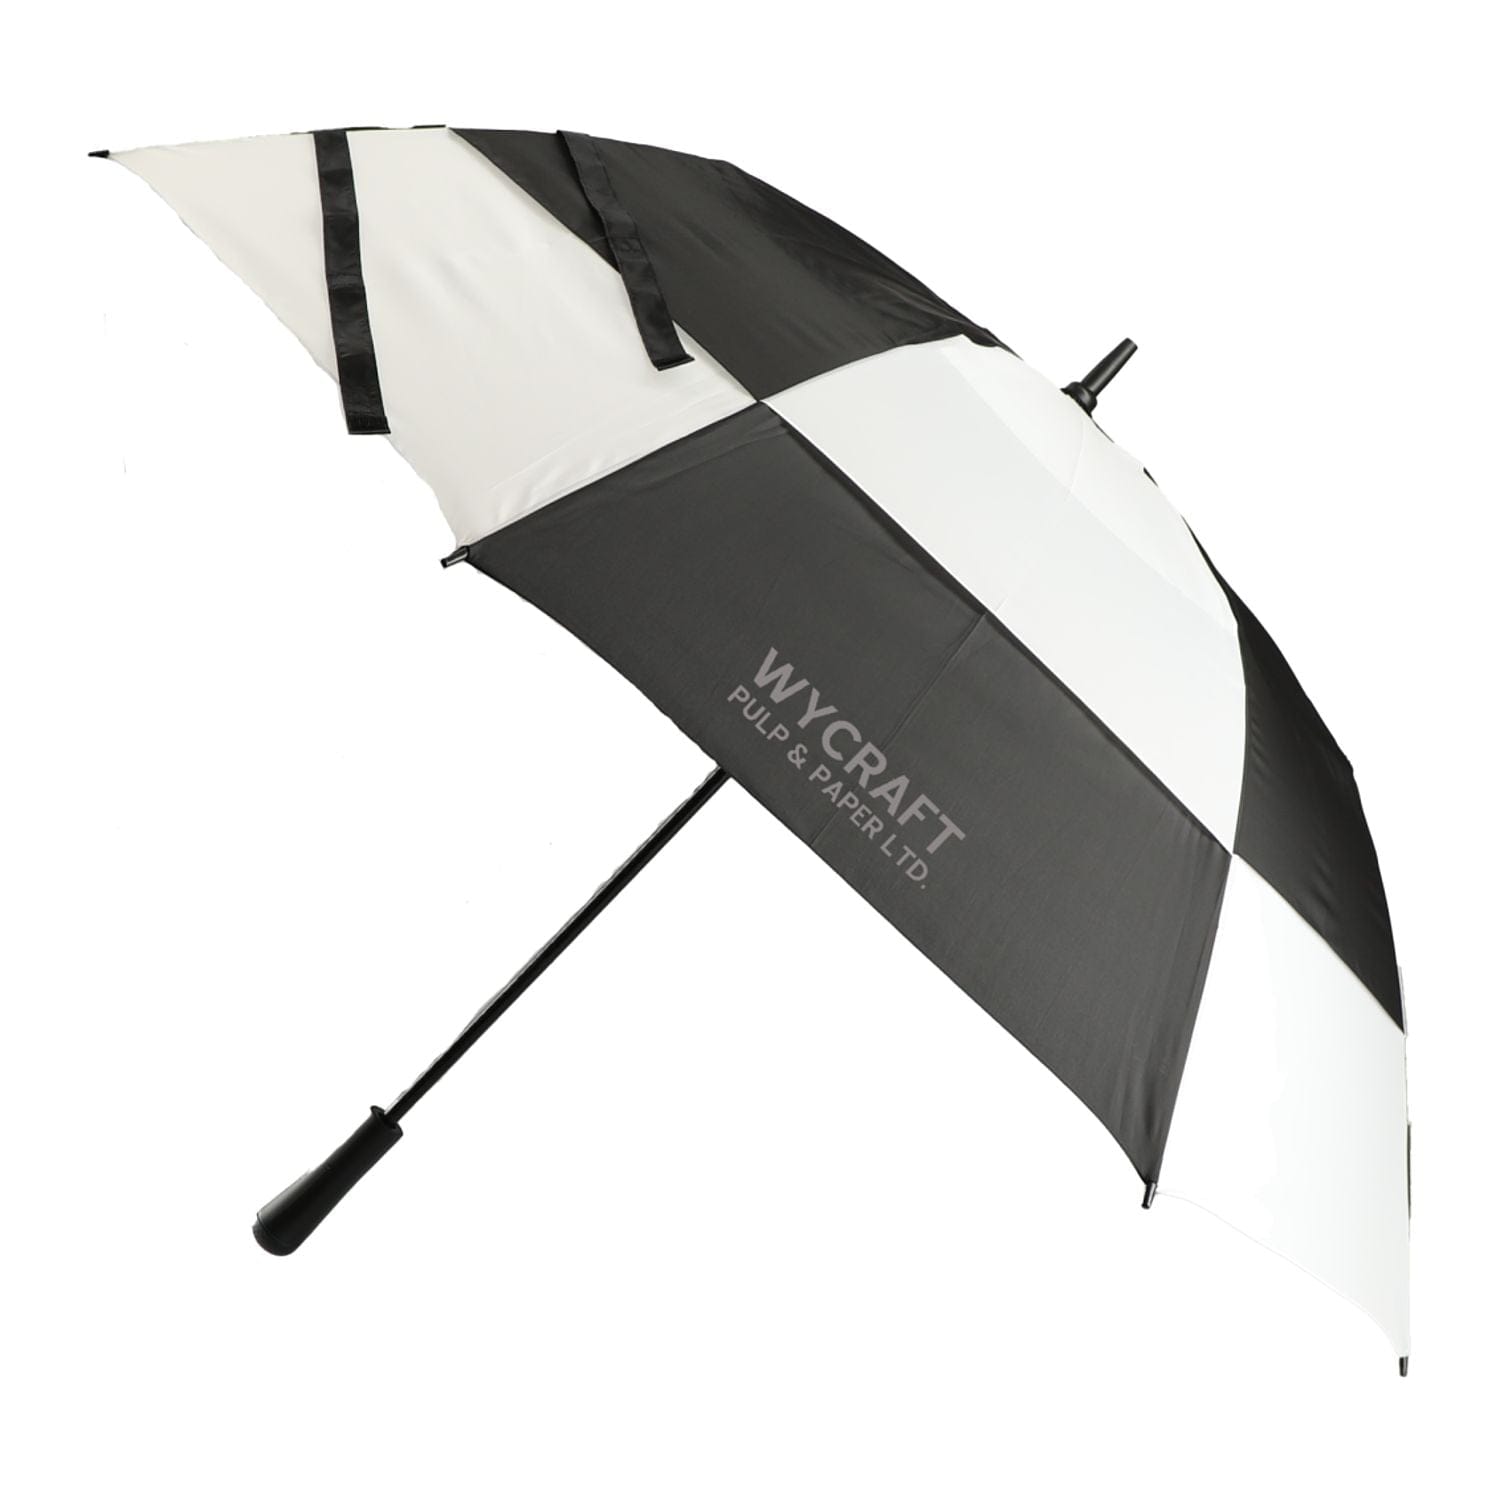 Totes Accessories 60" / Black/White totes - 64" UV Protection Auto Open Golf Umbrella